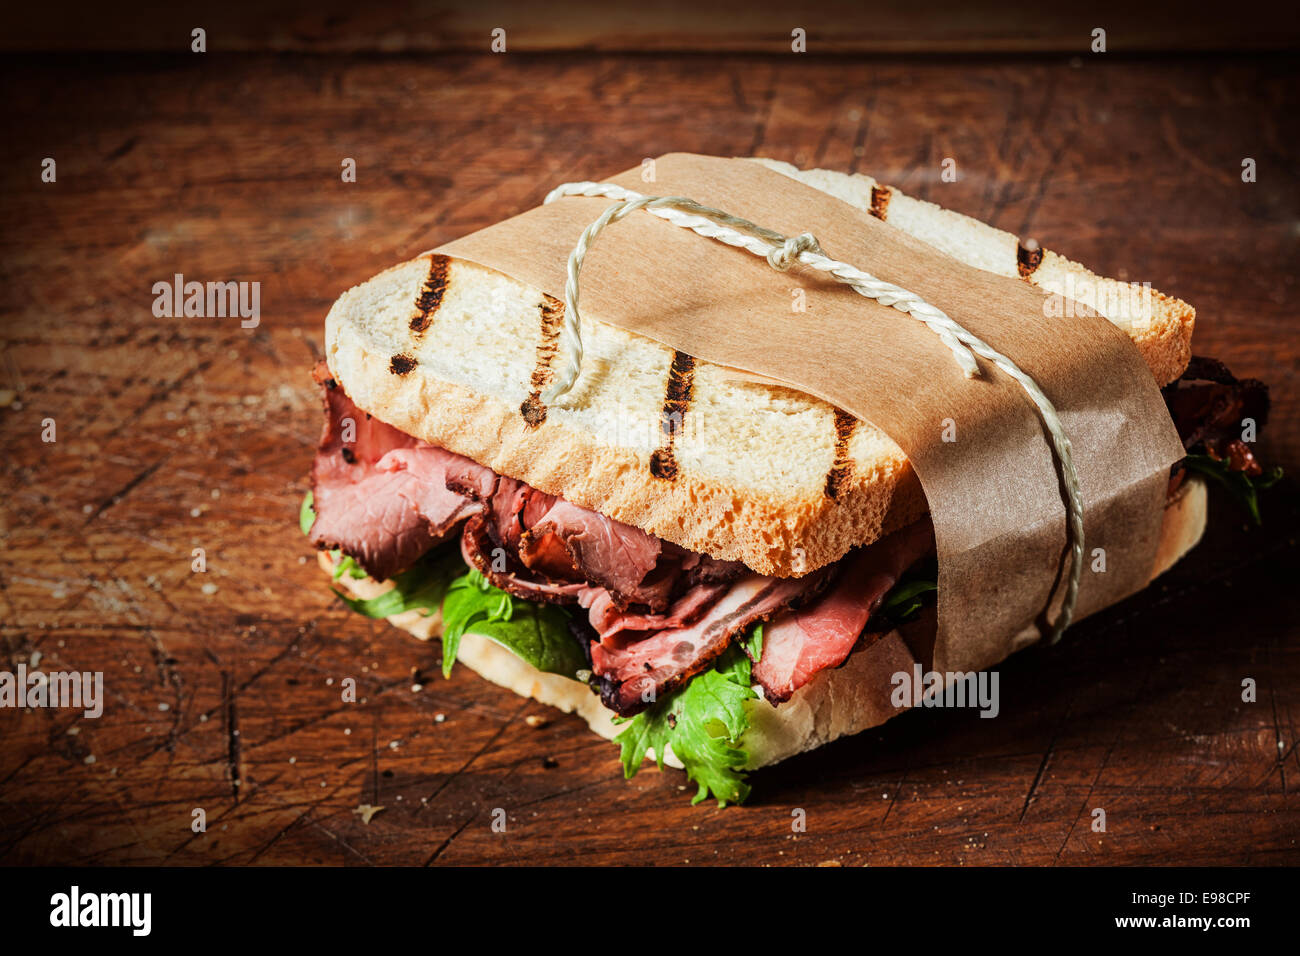 Deliziosa rare roast beef sandwich sul pane tostato alla brace avvolto in carta marrone legati con spago servita su un contatore di legno in un bistro in stile rustico Foto Stock